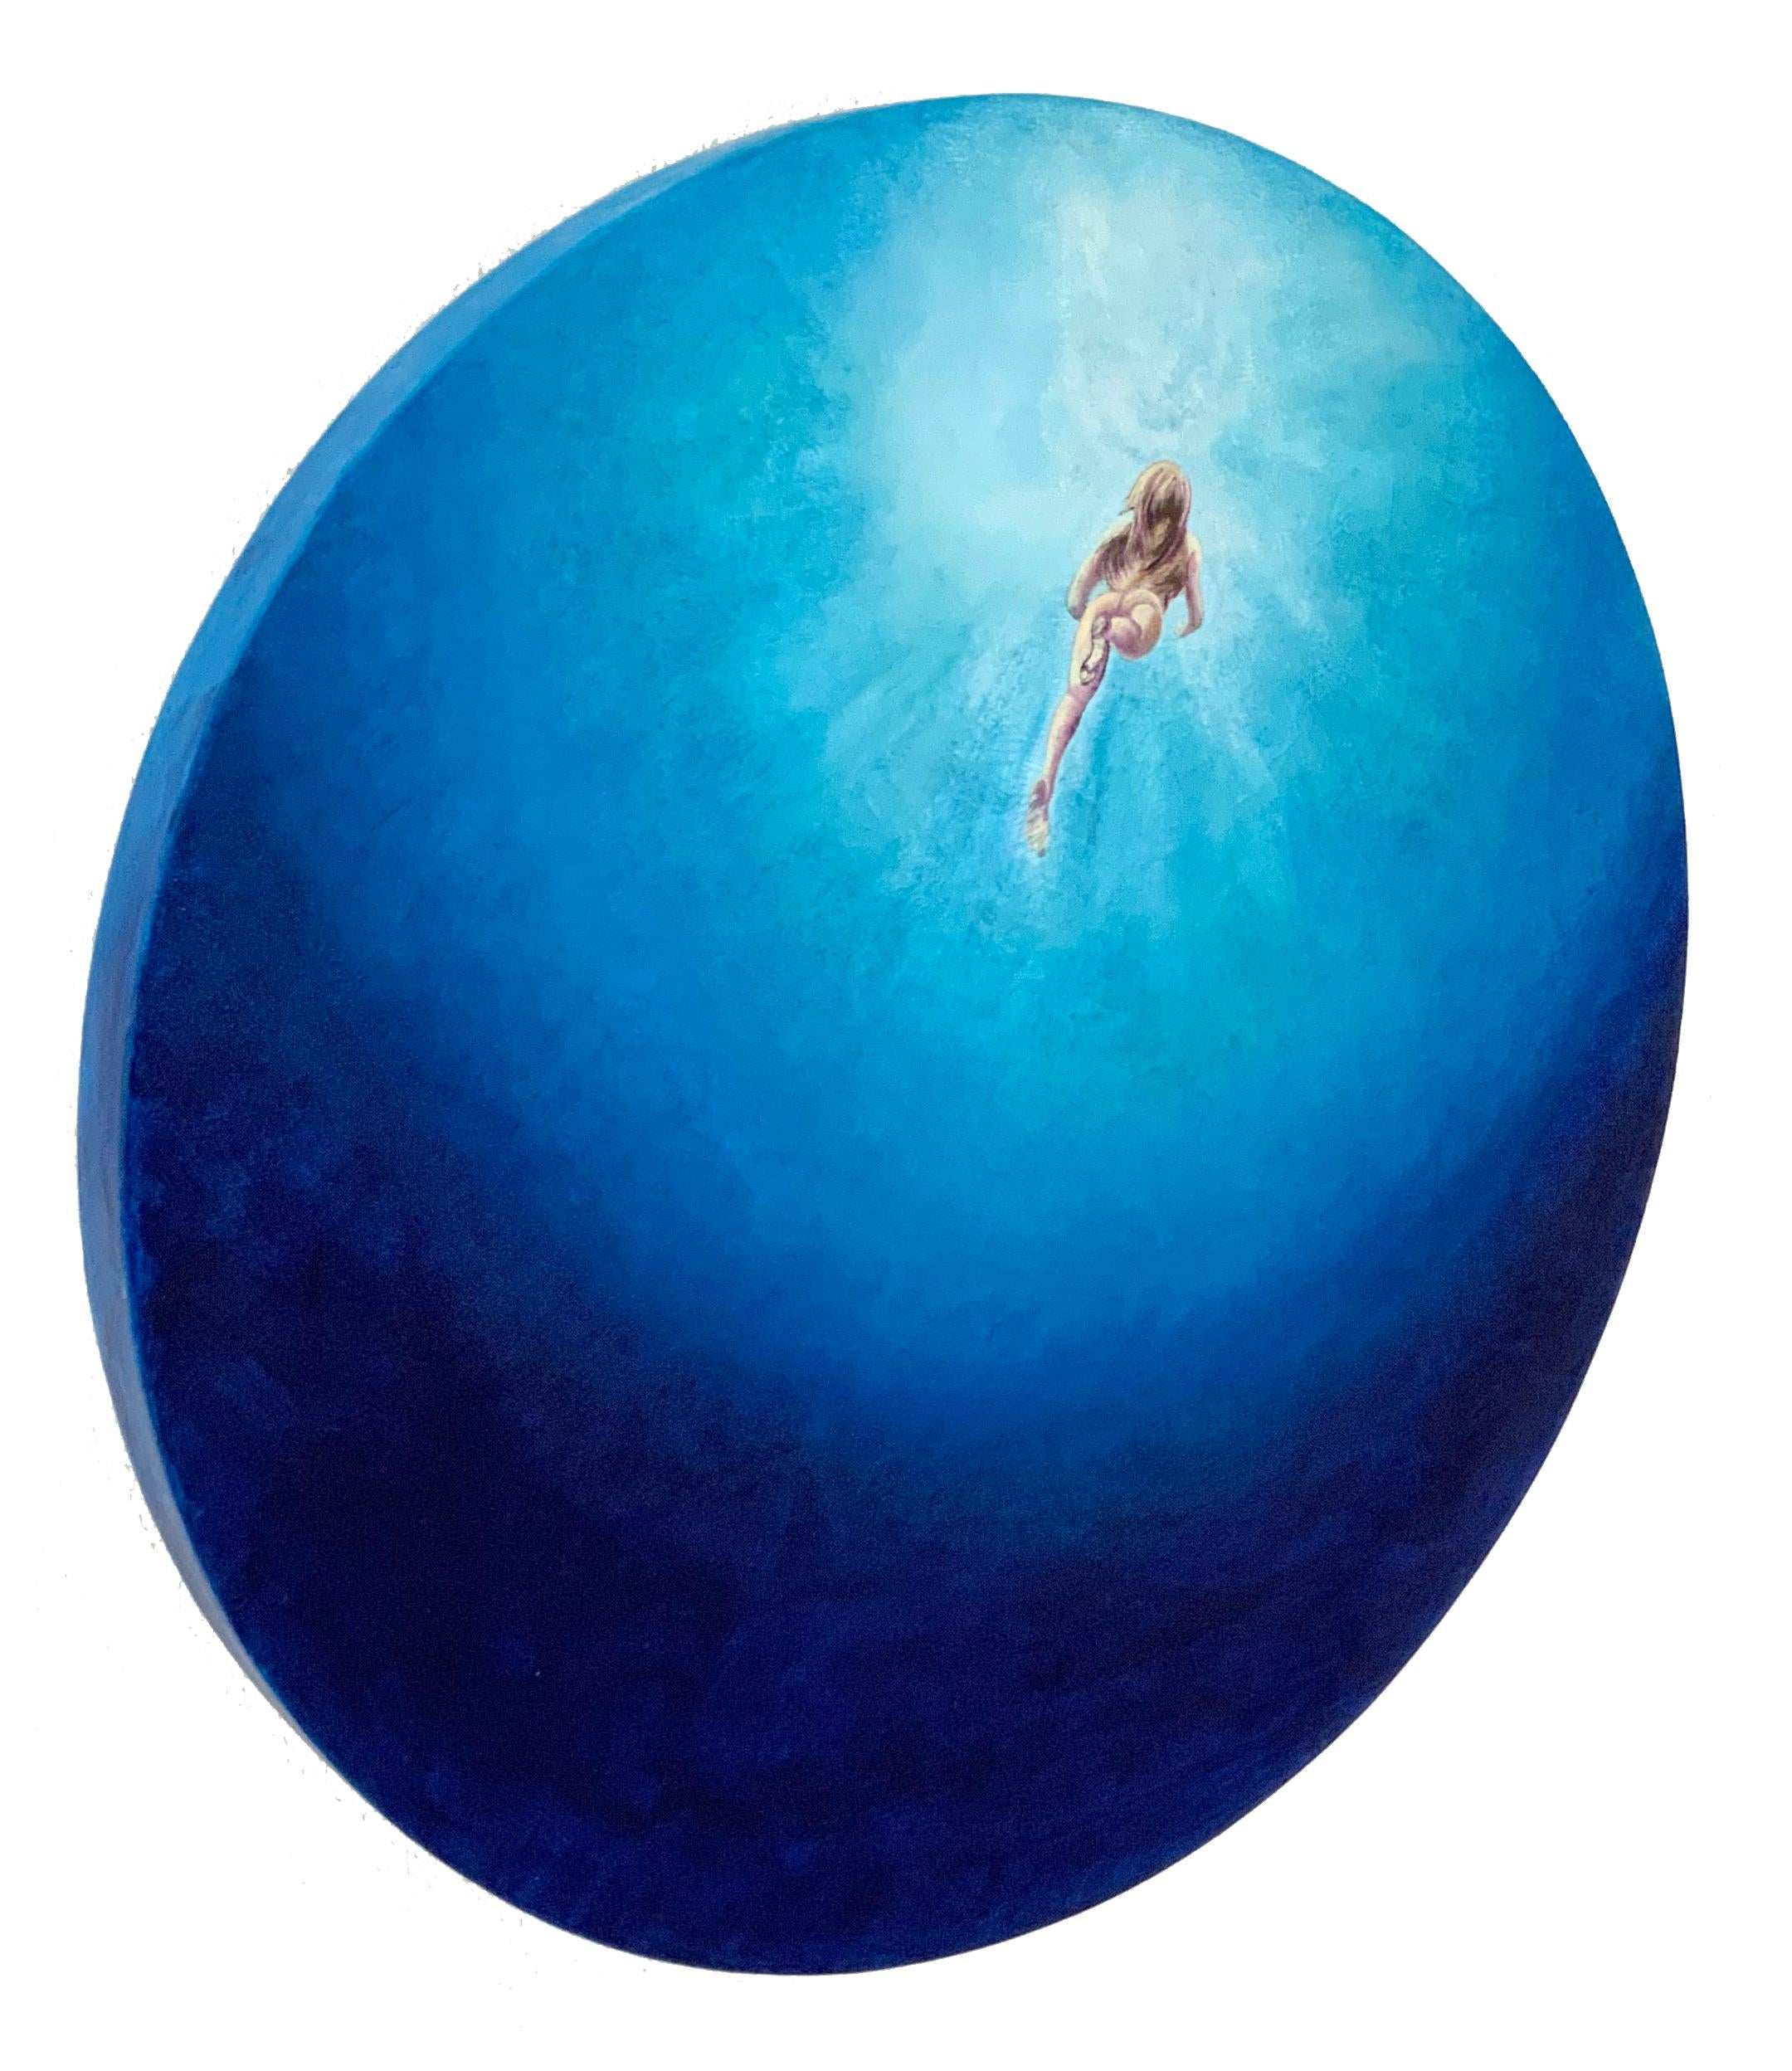 « Bleu velours », tons bleus vifs, peinture circulaire d'eau de mer avec nageoir nu - Painting de Anastasia Gklava